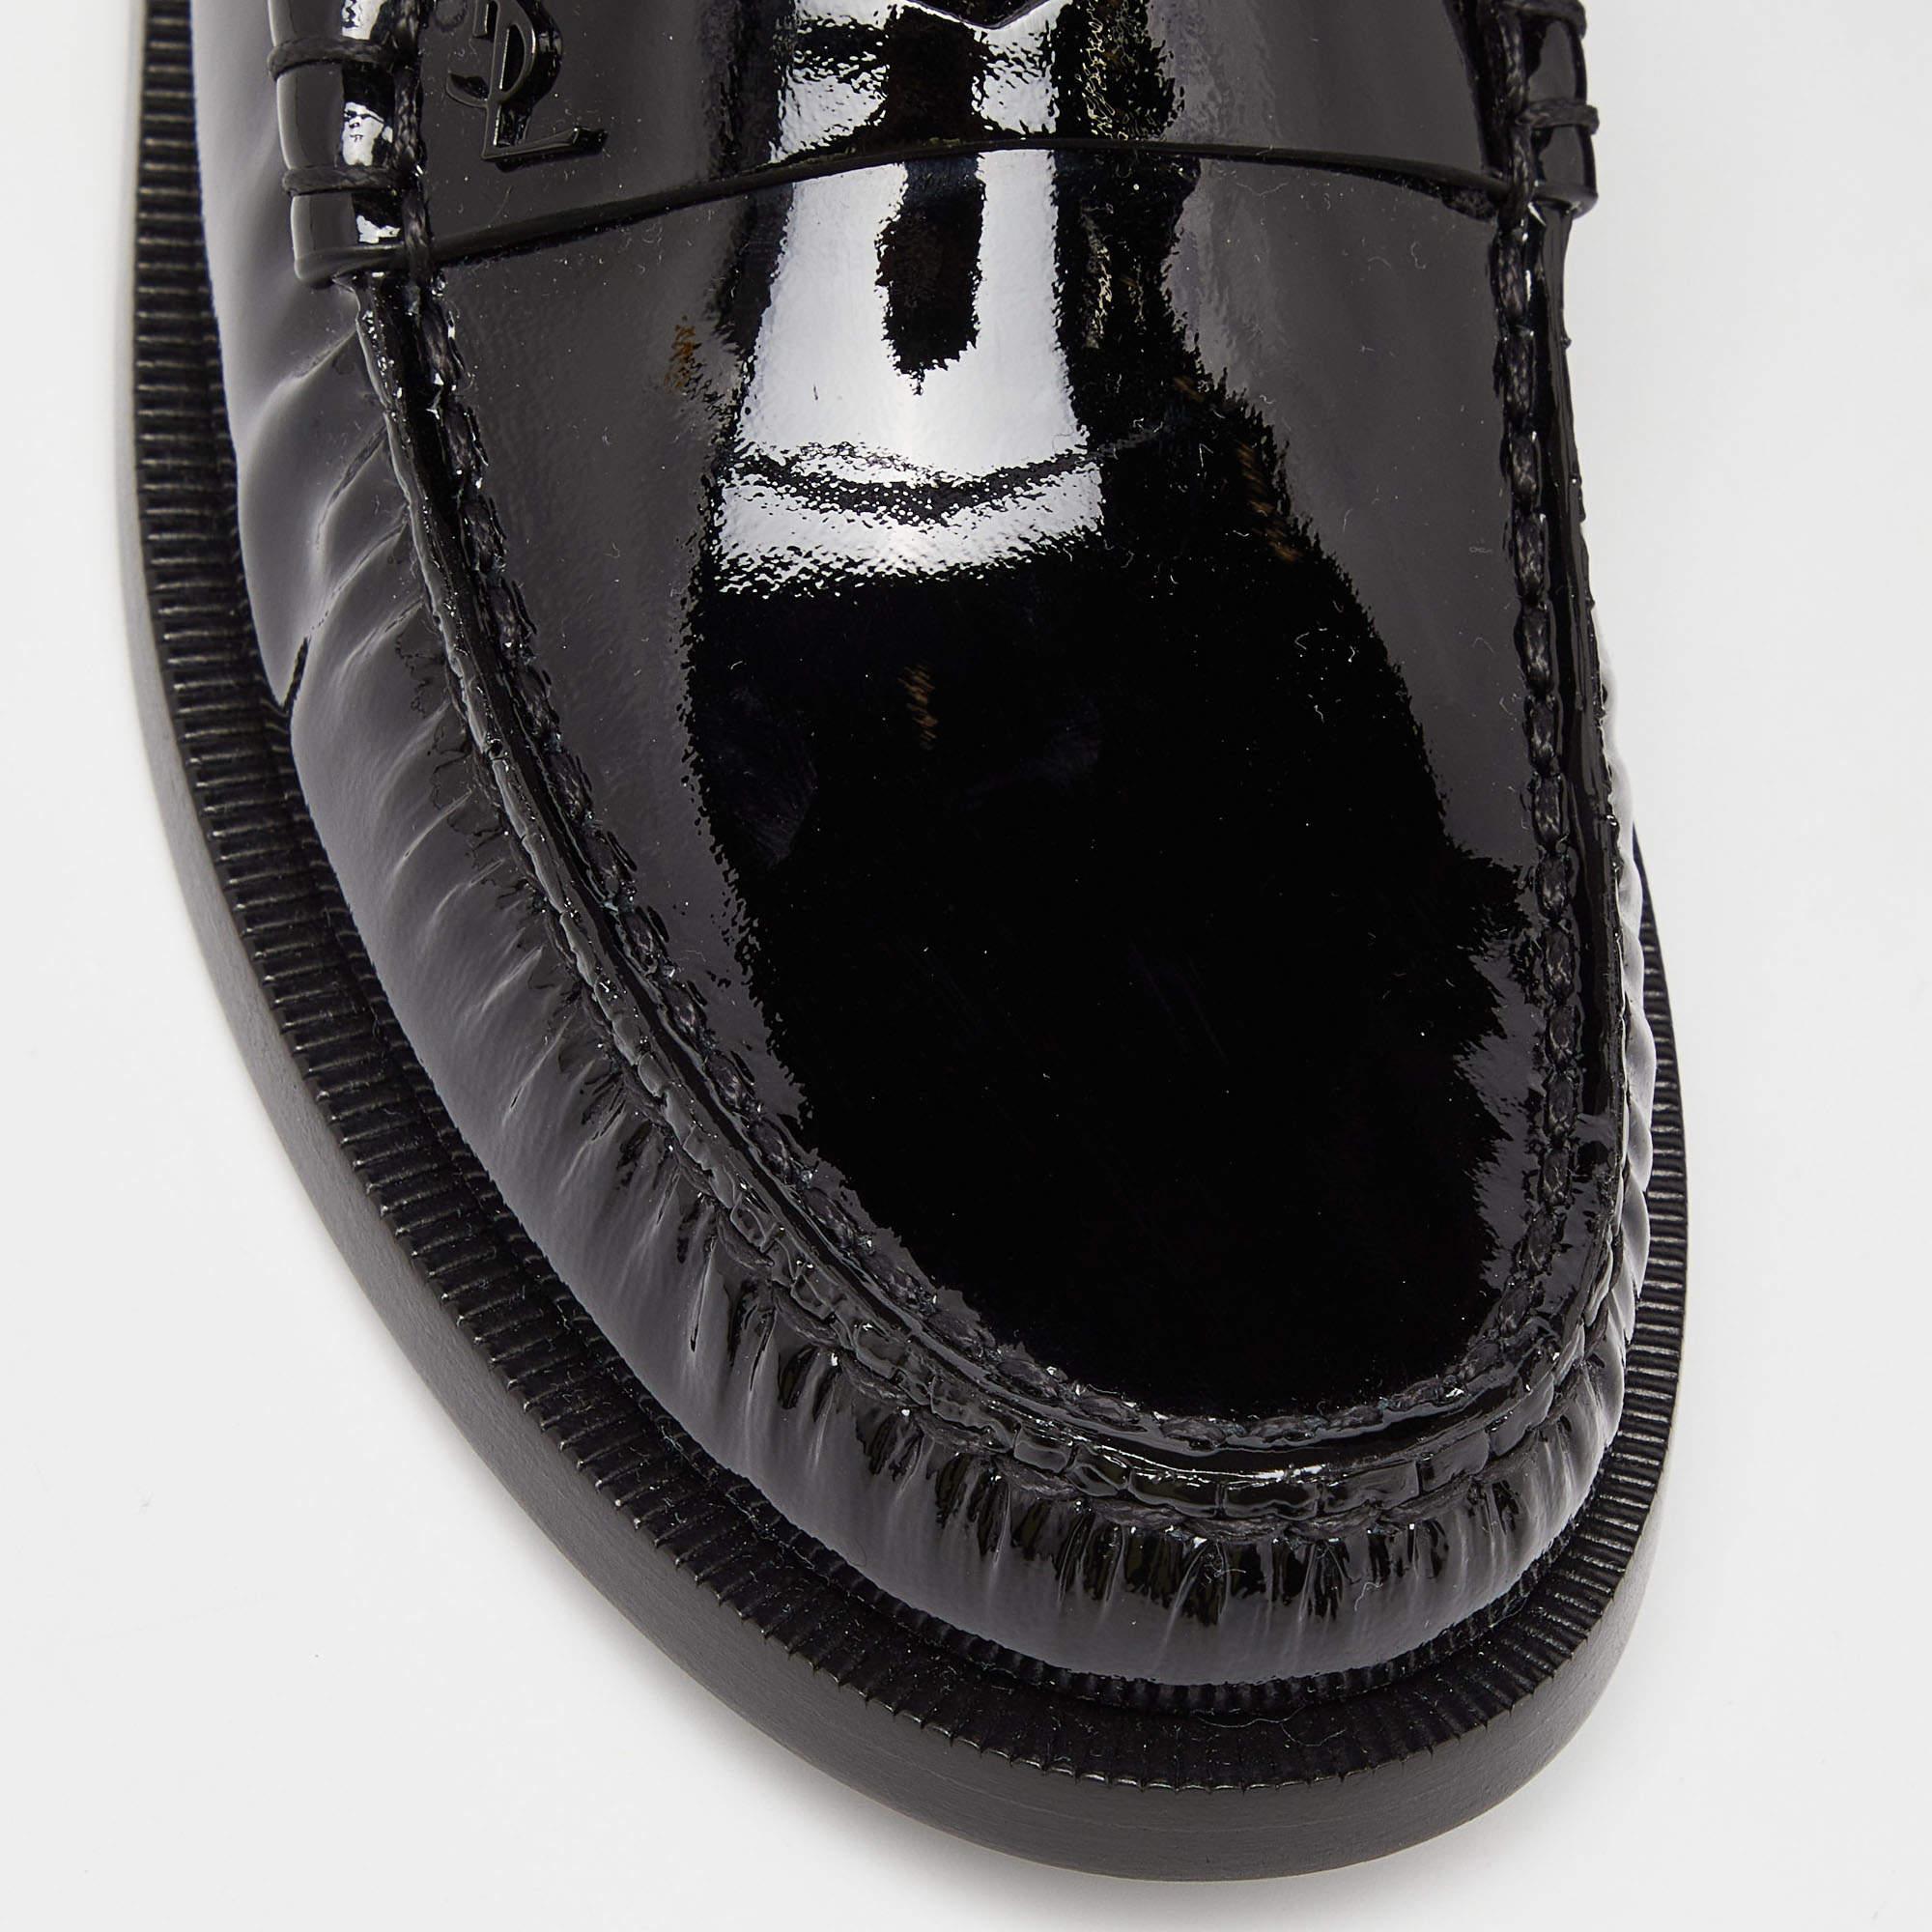 Women's Saint Laurent Black Patent Leather Penny Le Loafers Size 37.5